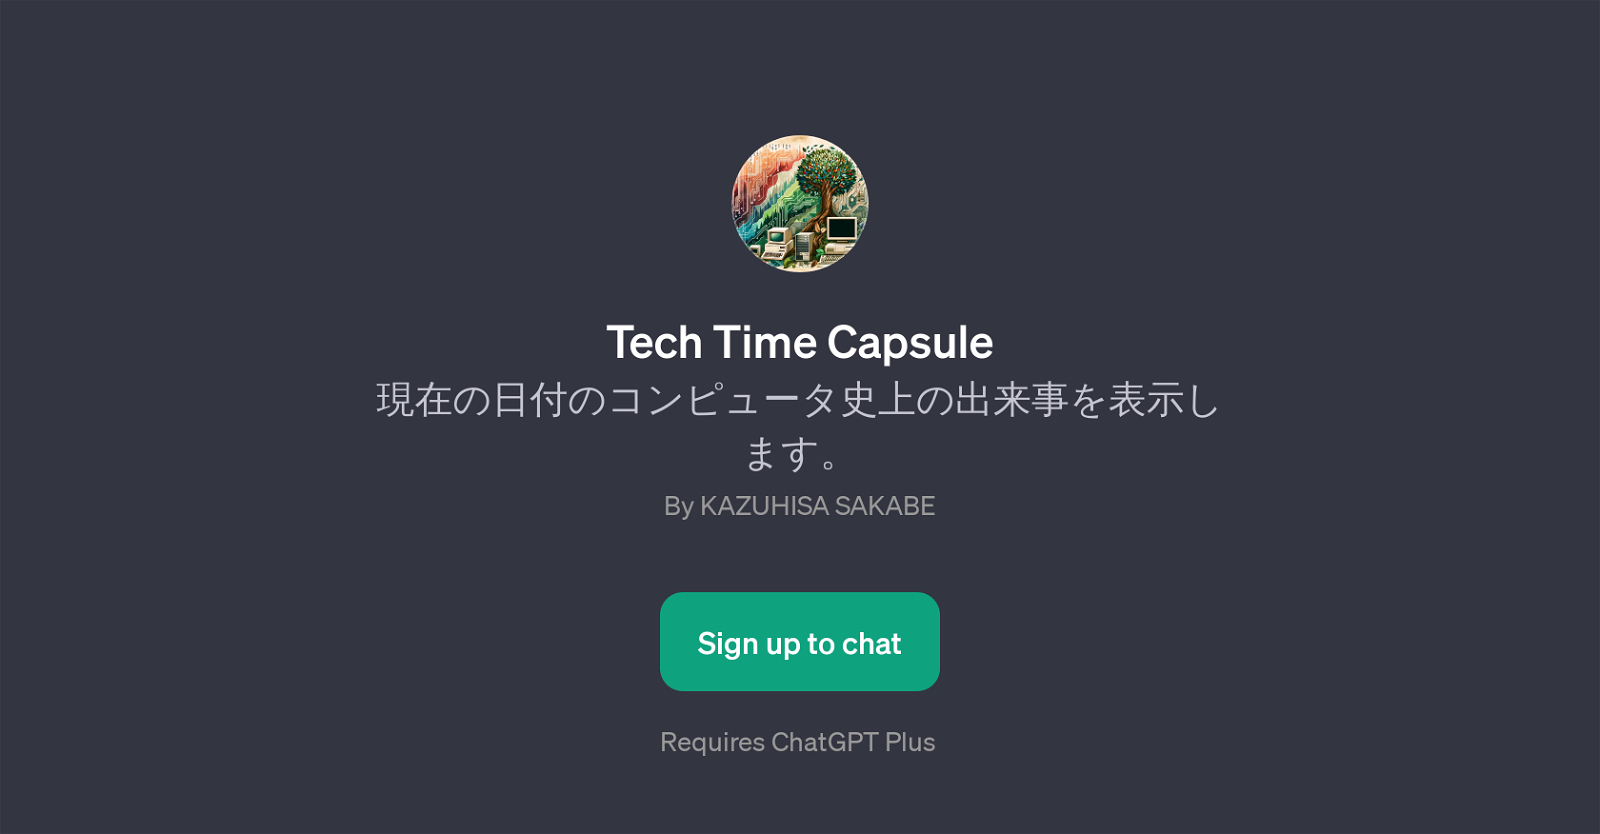 Tech Time Capsule website